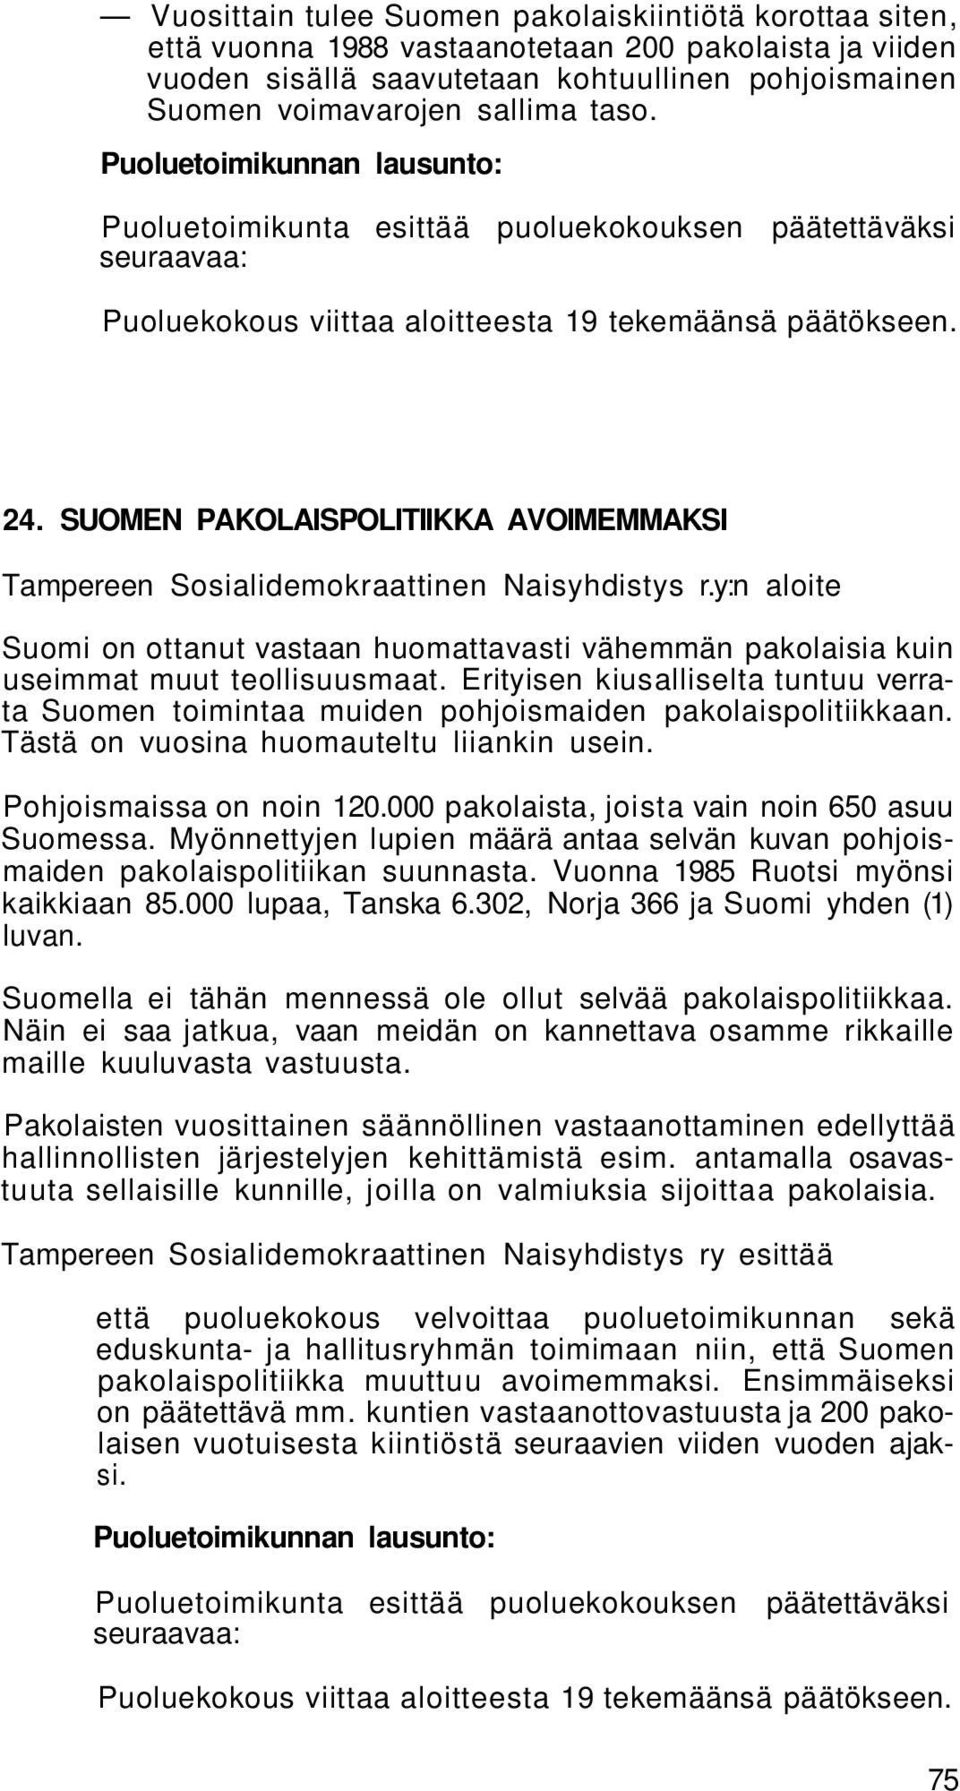 SUOMEN PAKOLAISPOLITIIKKA AVOIMEMMAKSI Tampereen Sosialidemokraattinen Naisyhdistys r.y:n aloite Suomi on ottanut vastaan huomattavasti vähemmän pakolaisia kuin useimmat muut teollisuusmaat.